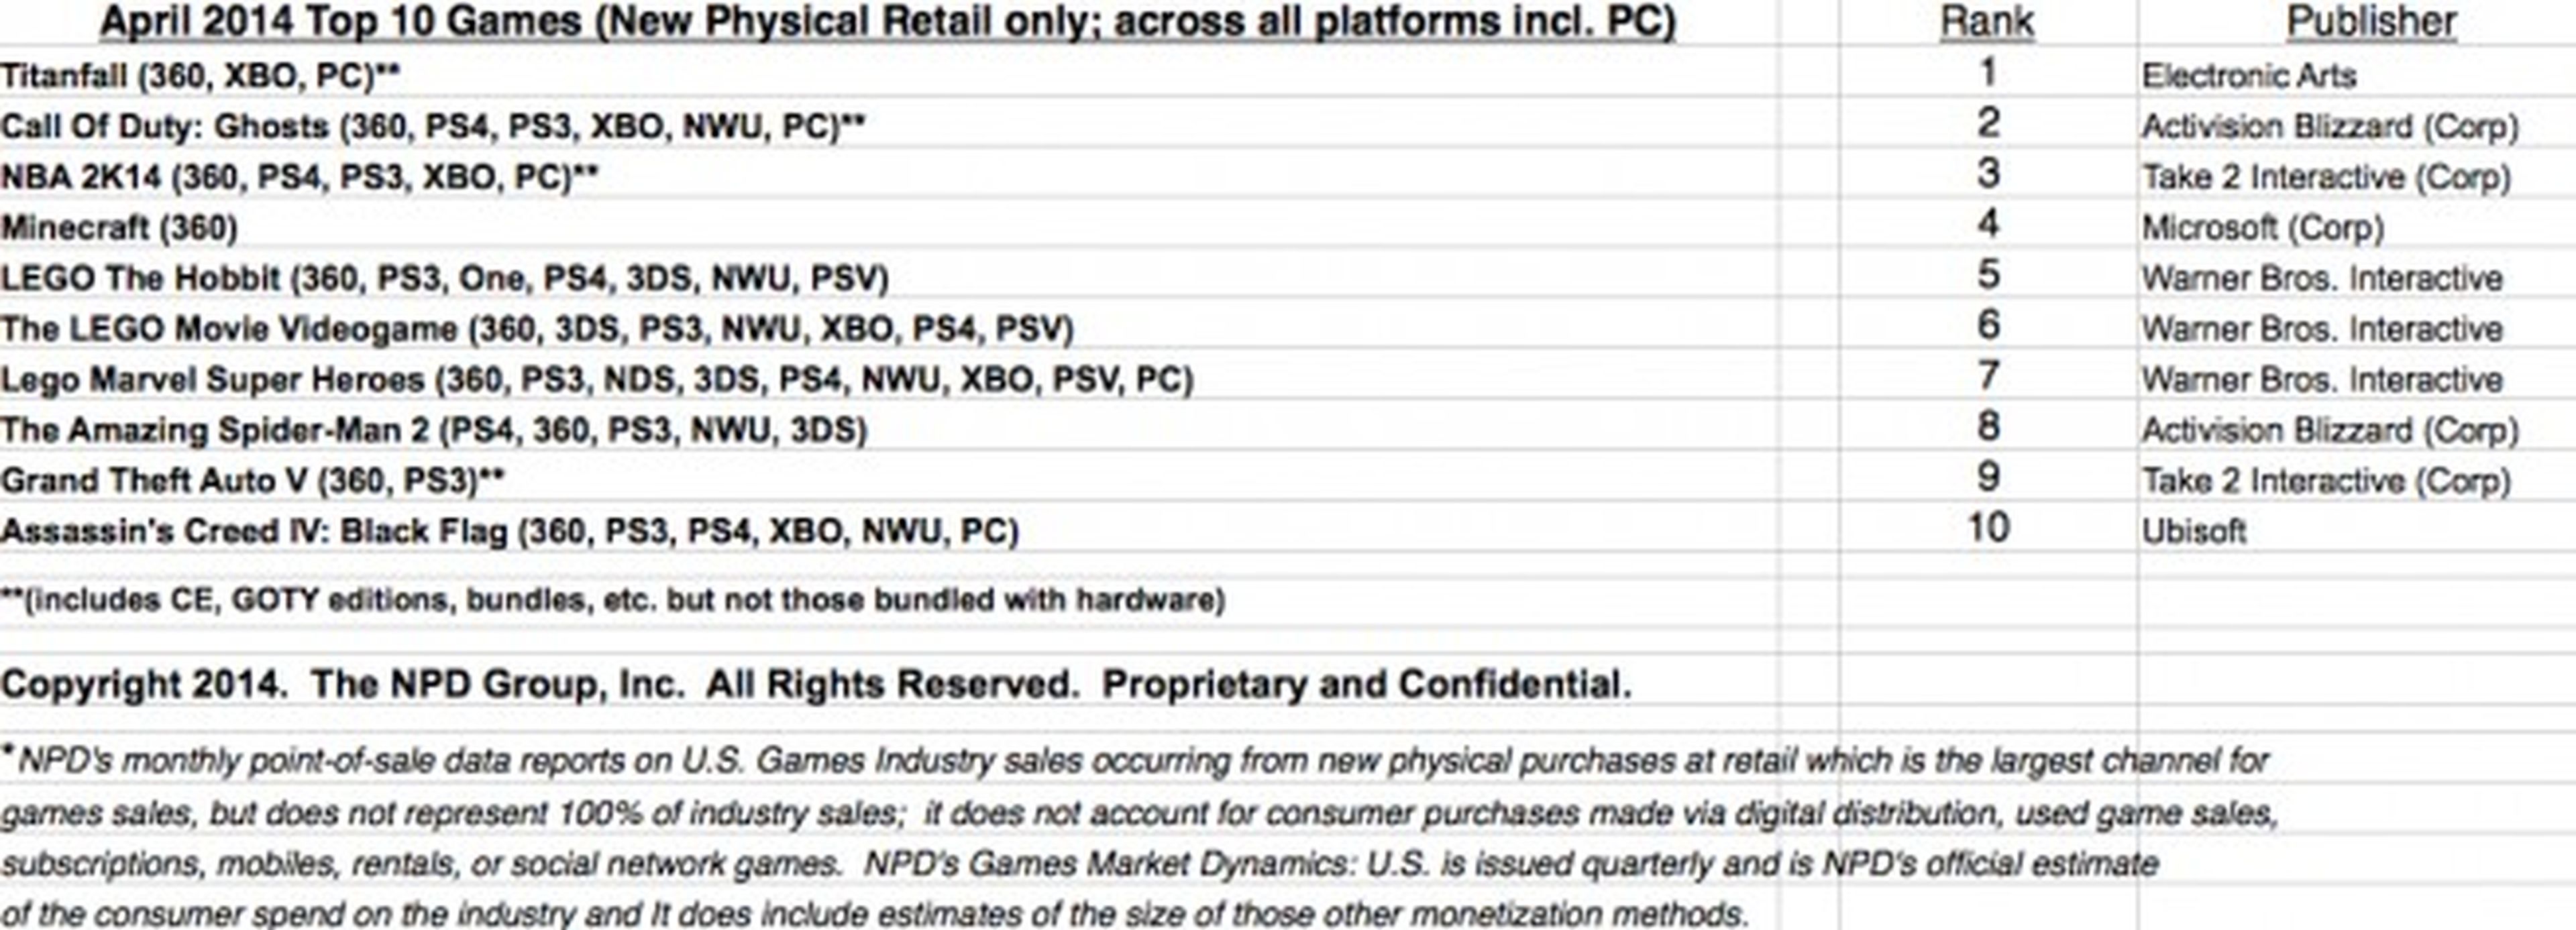 Titanfall es el juego más vendido en Estados unidos en abril